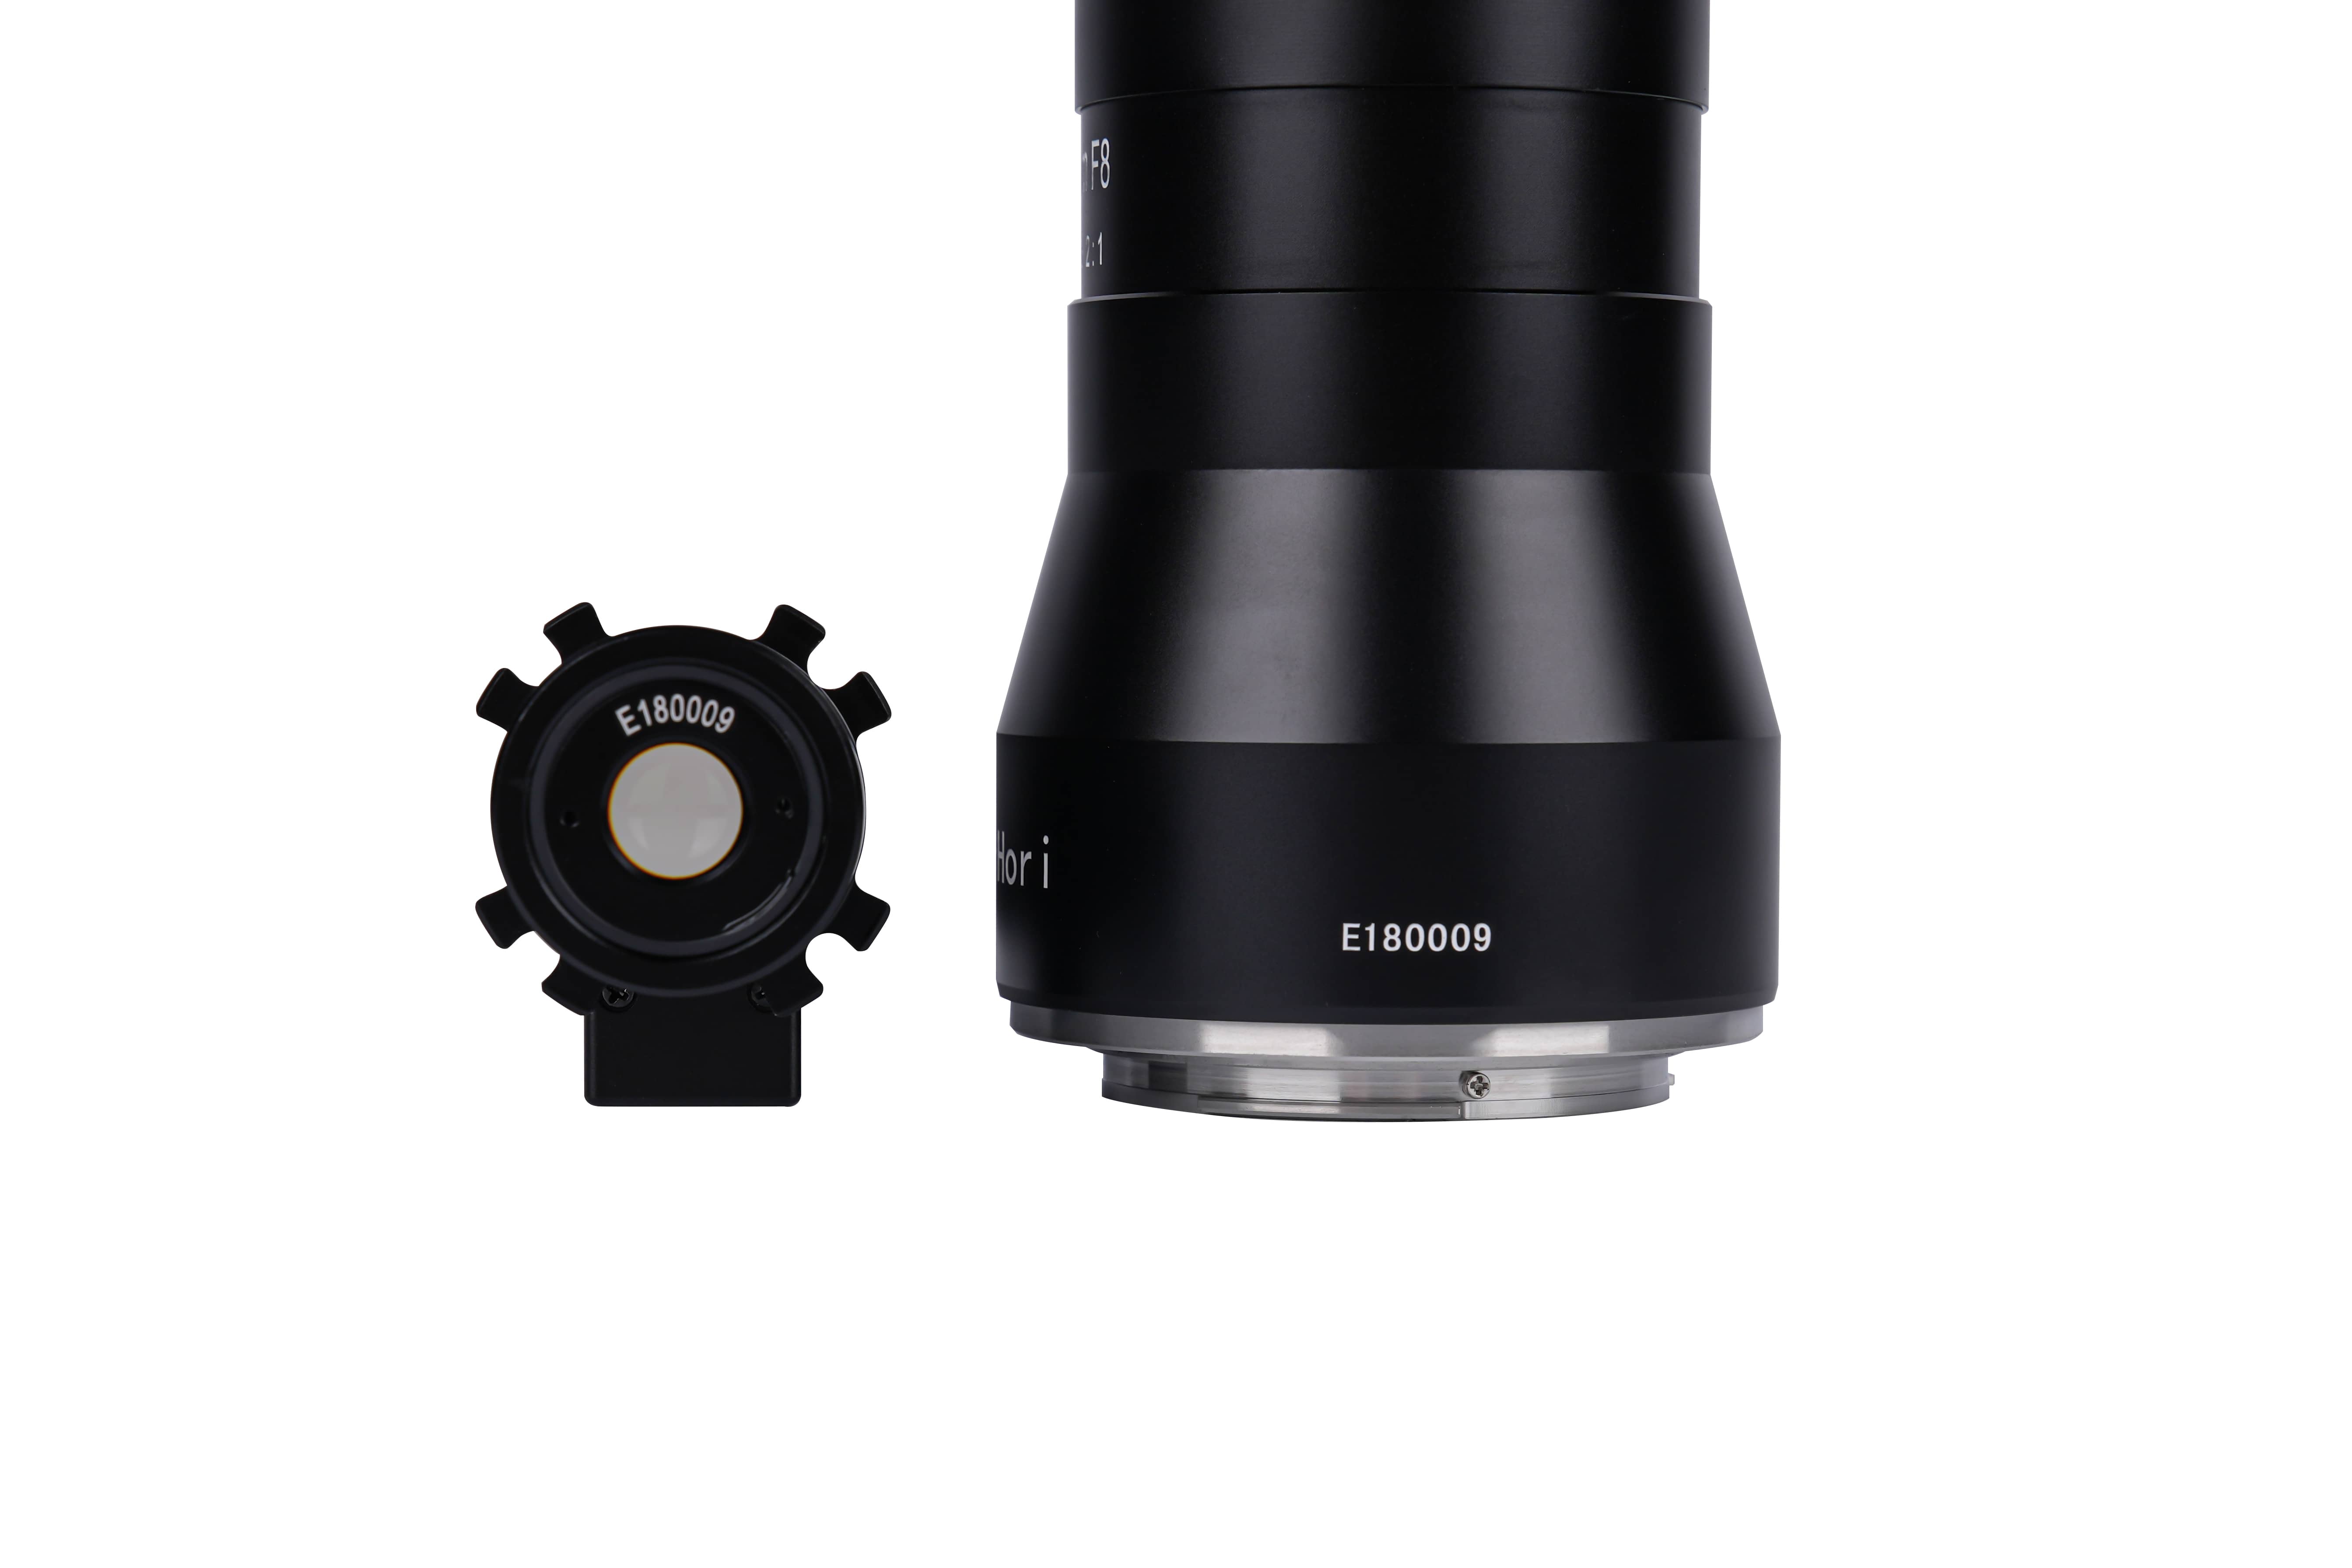 AstrHori 18mm f/8 2x Periscope Probe Macro Lens for Sony/Nikon/Fuji/Canon/M4/3 Cameras